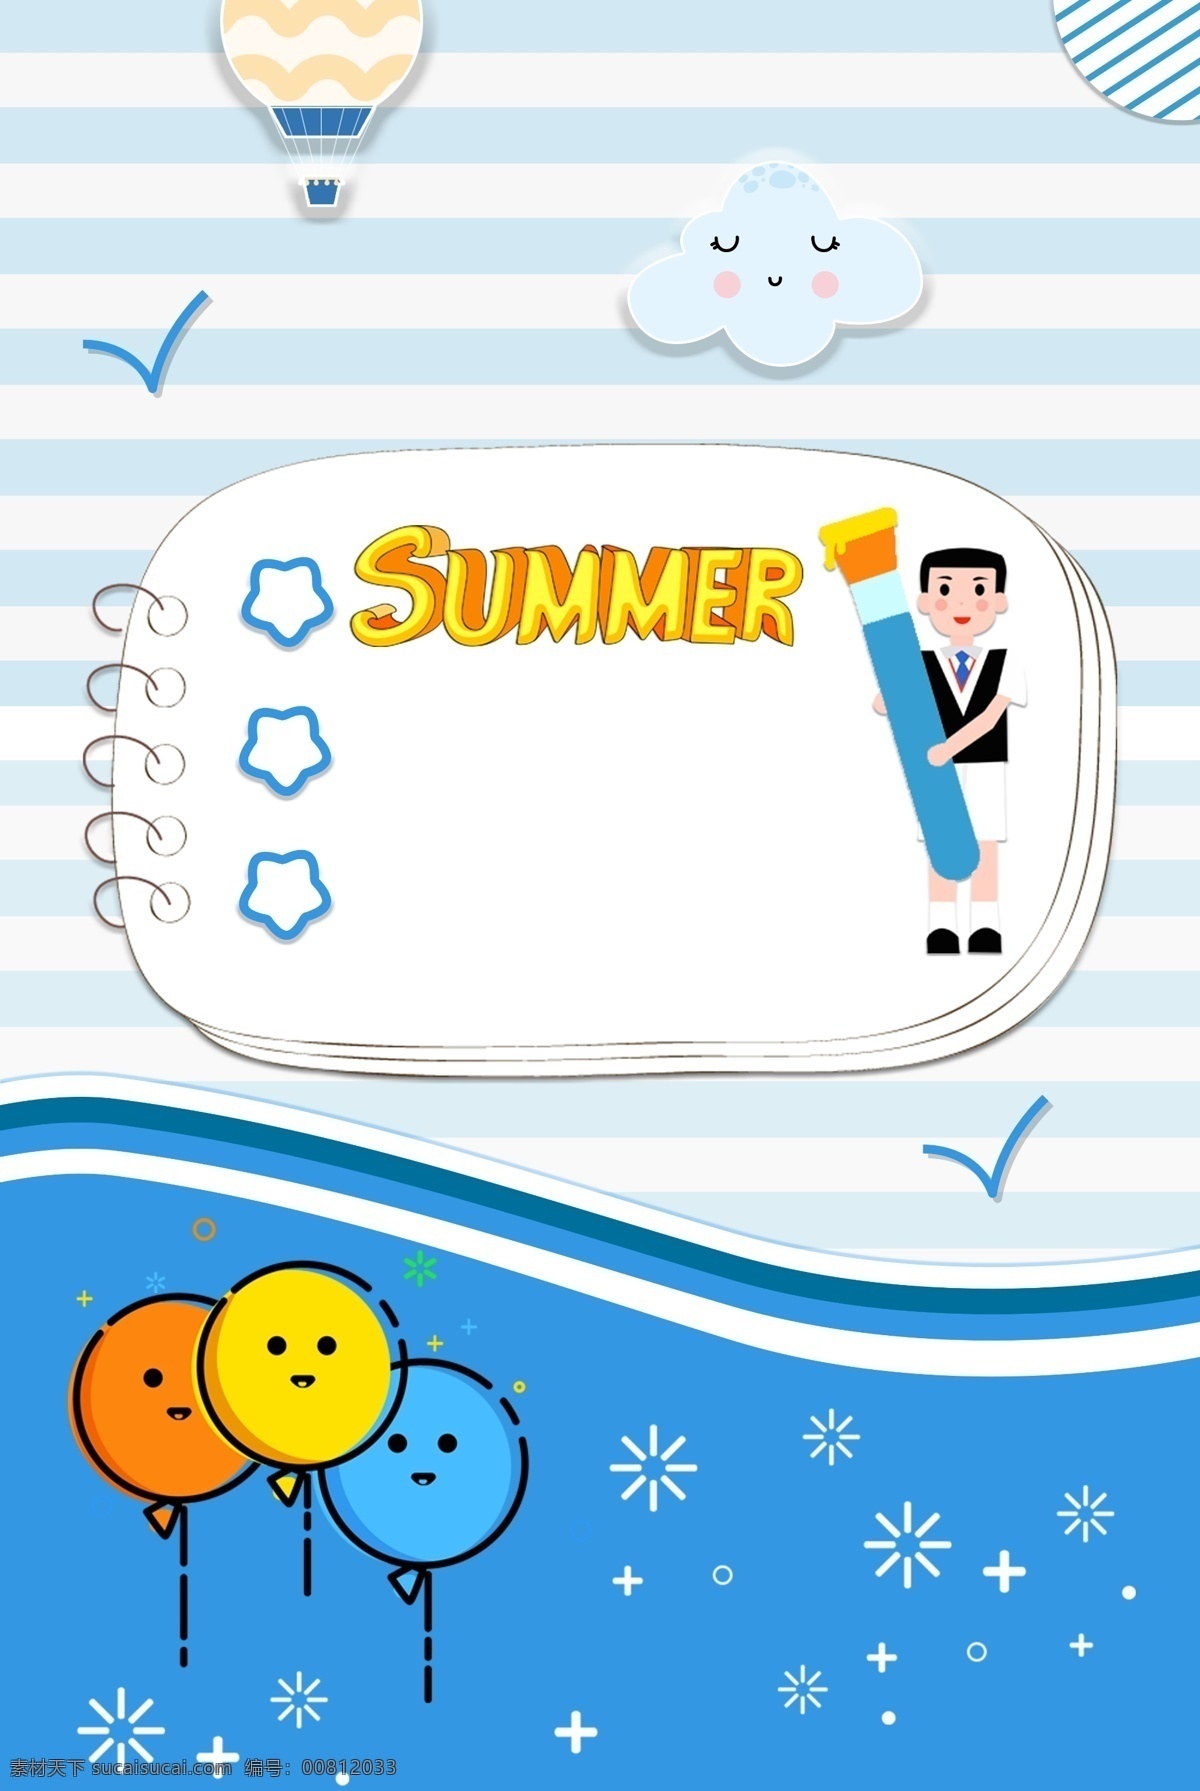 蓝色 卡通 mbe 风格 气球 假期 培训 宣传海报 假期培训 夏天 可爱 云朵 图形 海边 促销 暑假 广告海报 背景